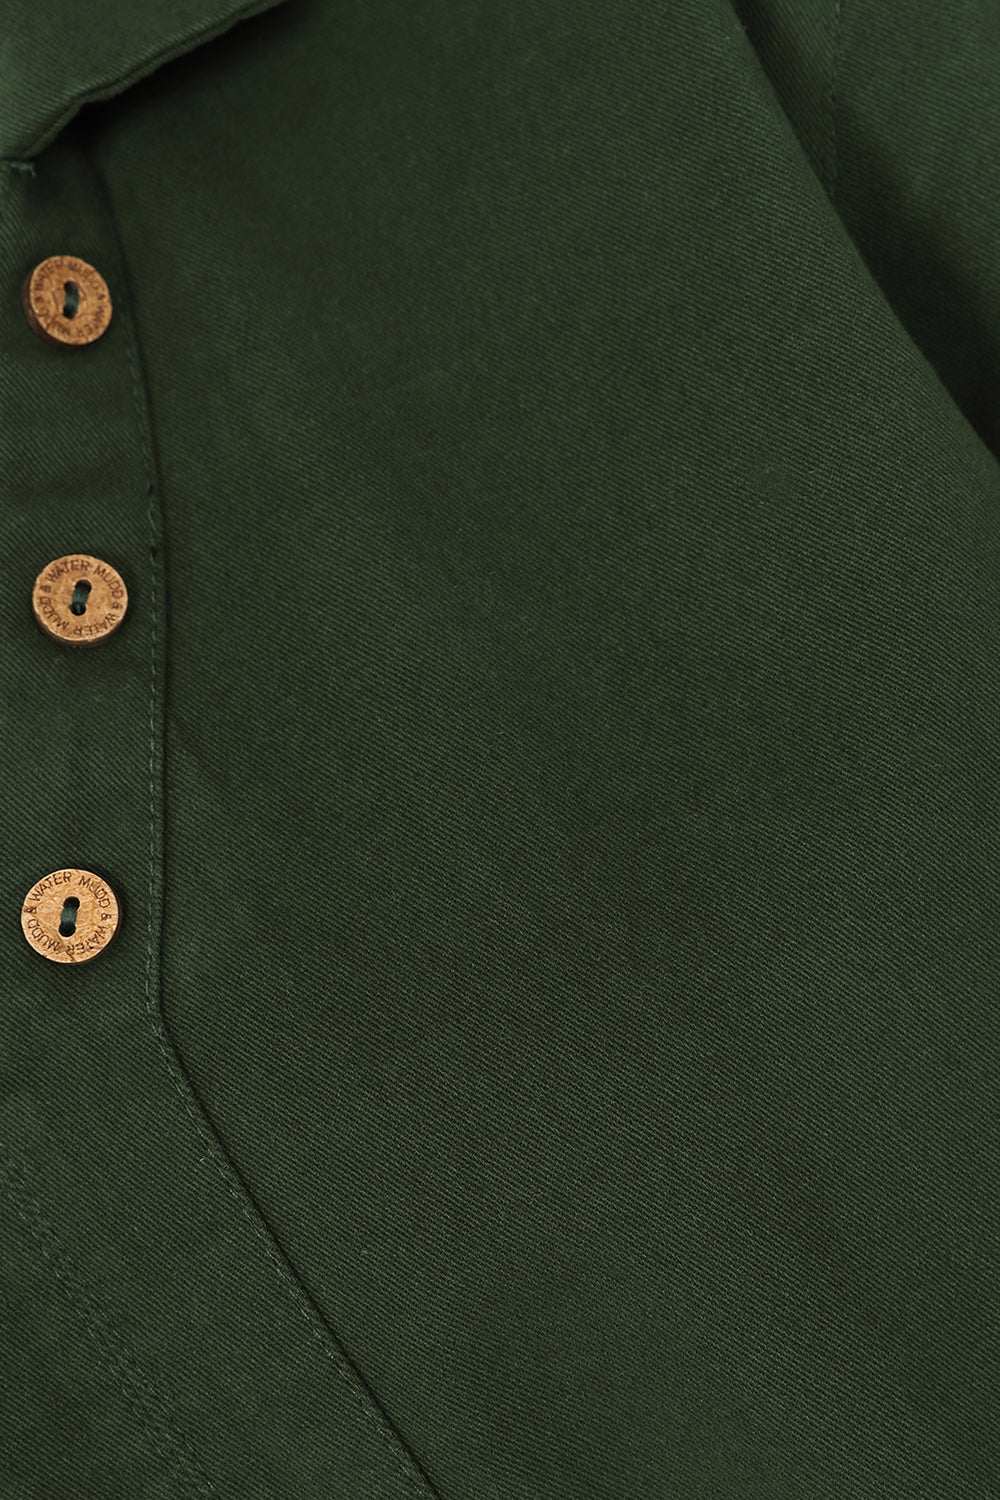 Falltime Tunic - Green - Organic Cotton Jean